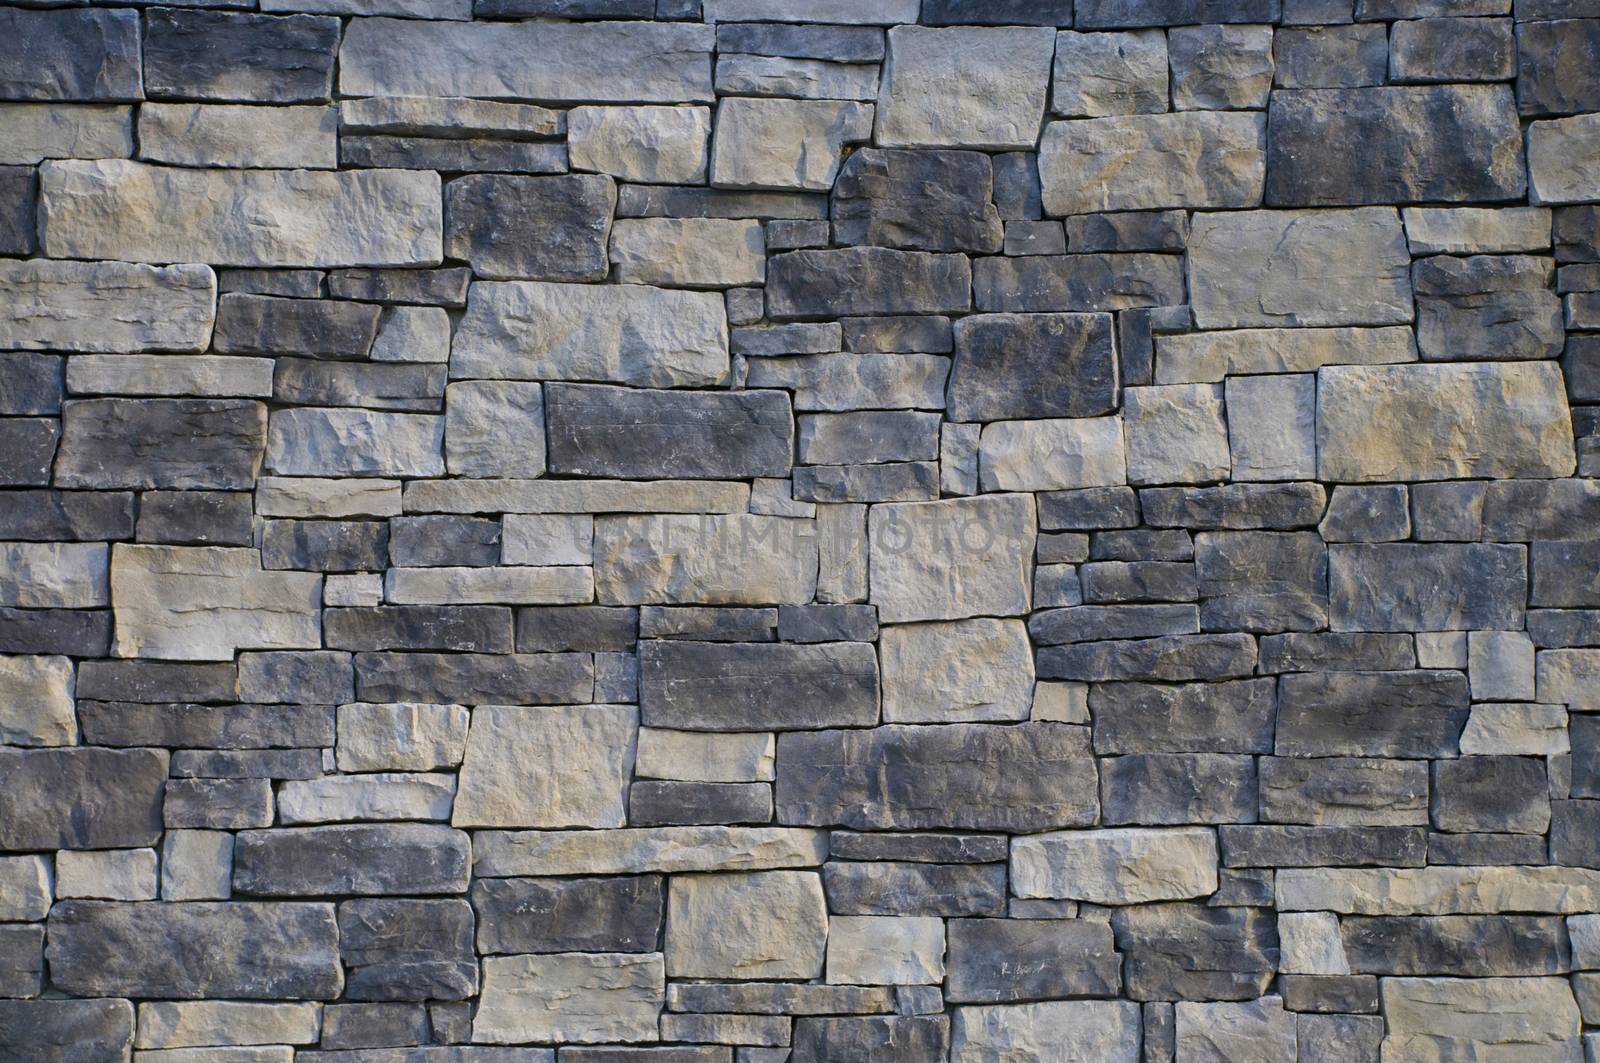 Monochromatic gray exterior masonry block wall